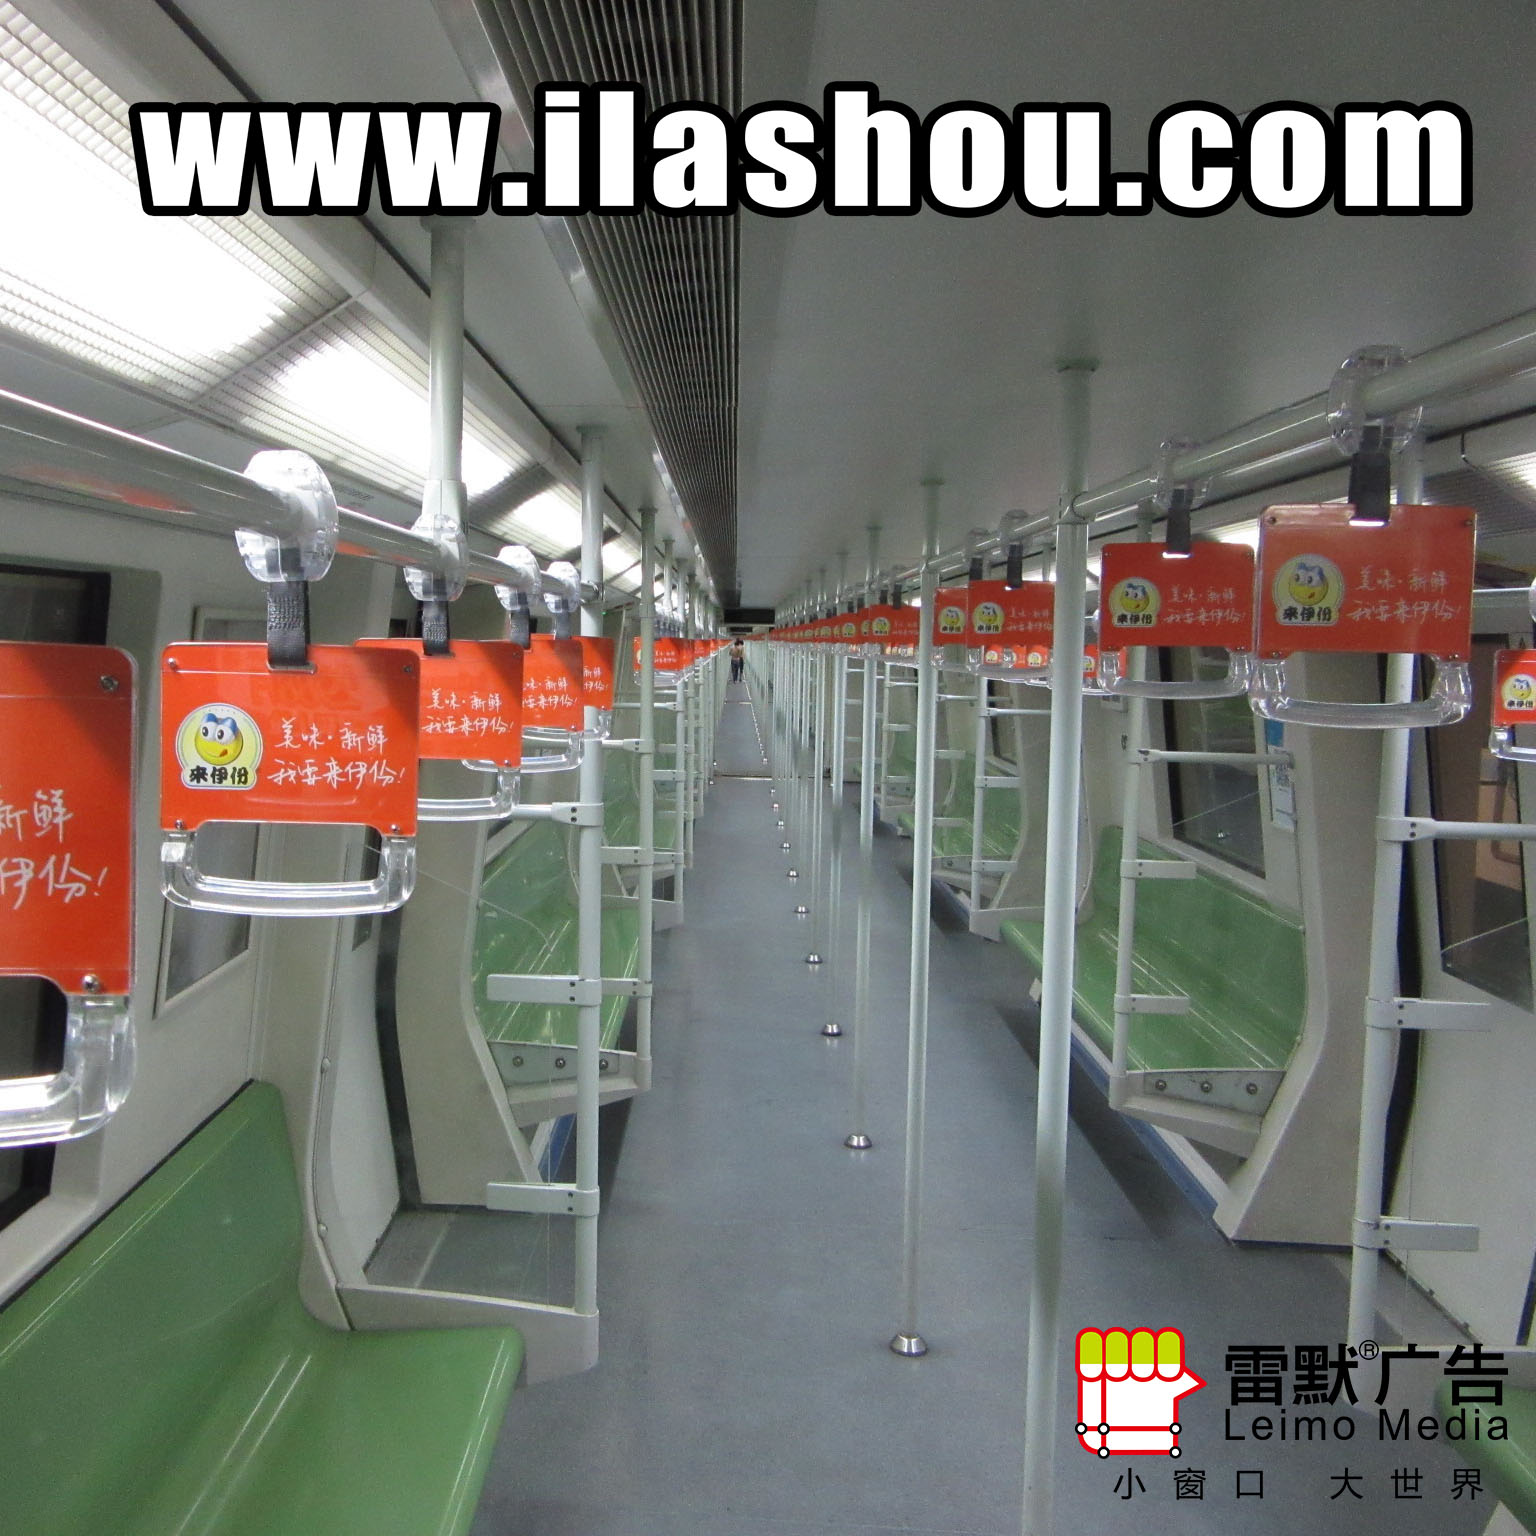 上海地铁传媒广告 上海地铁拉手传媒广告